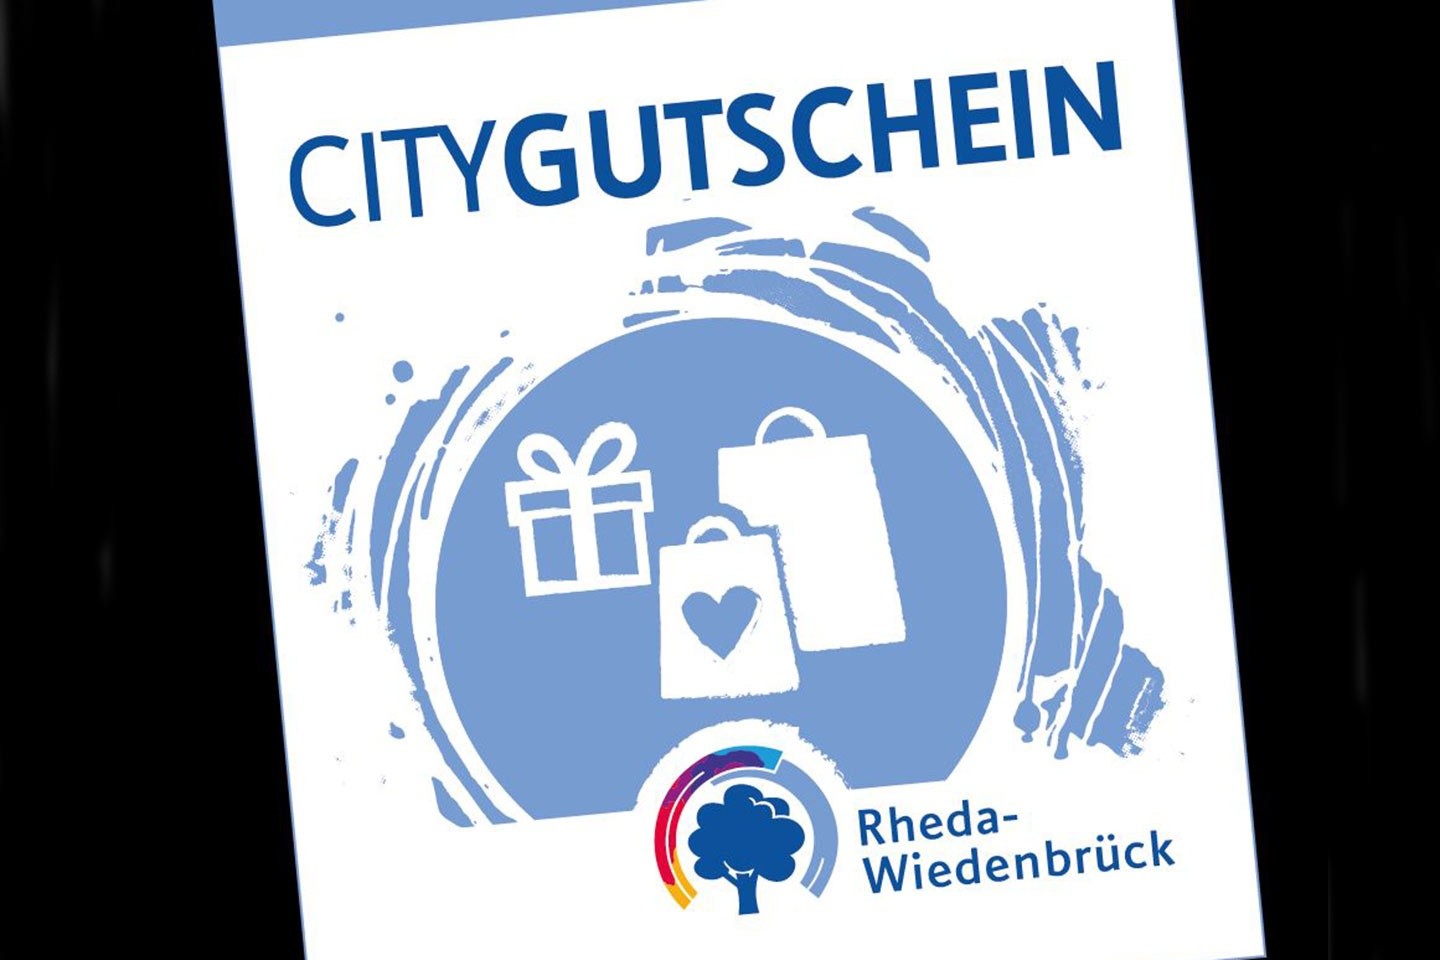 Citygutschein Rheda-Wiedenbrück